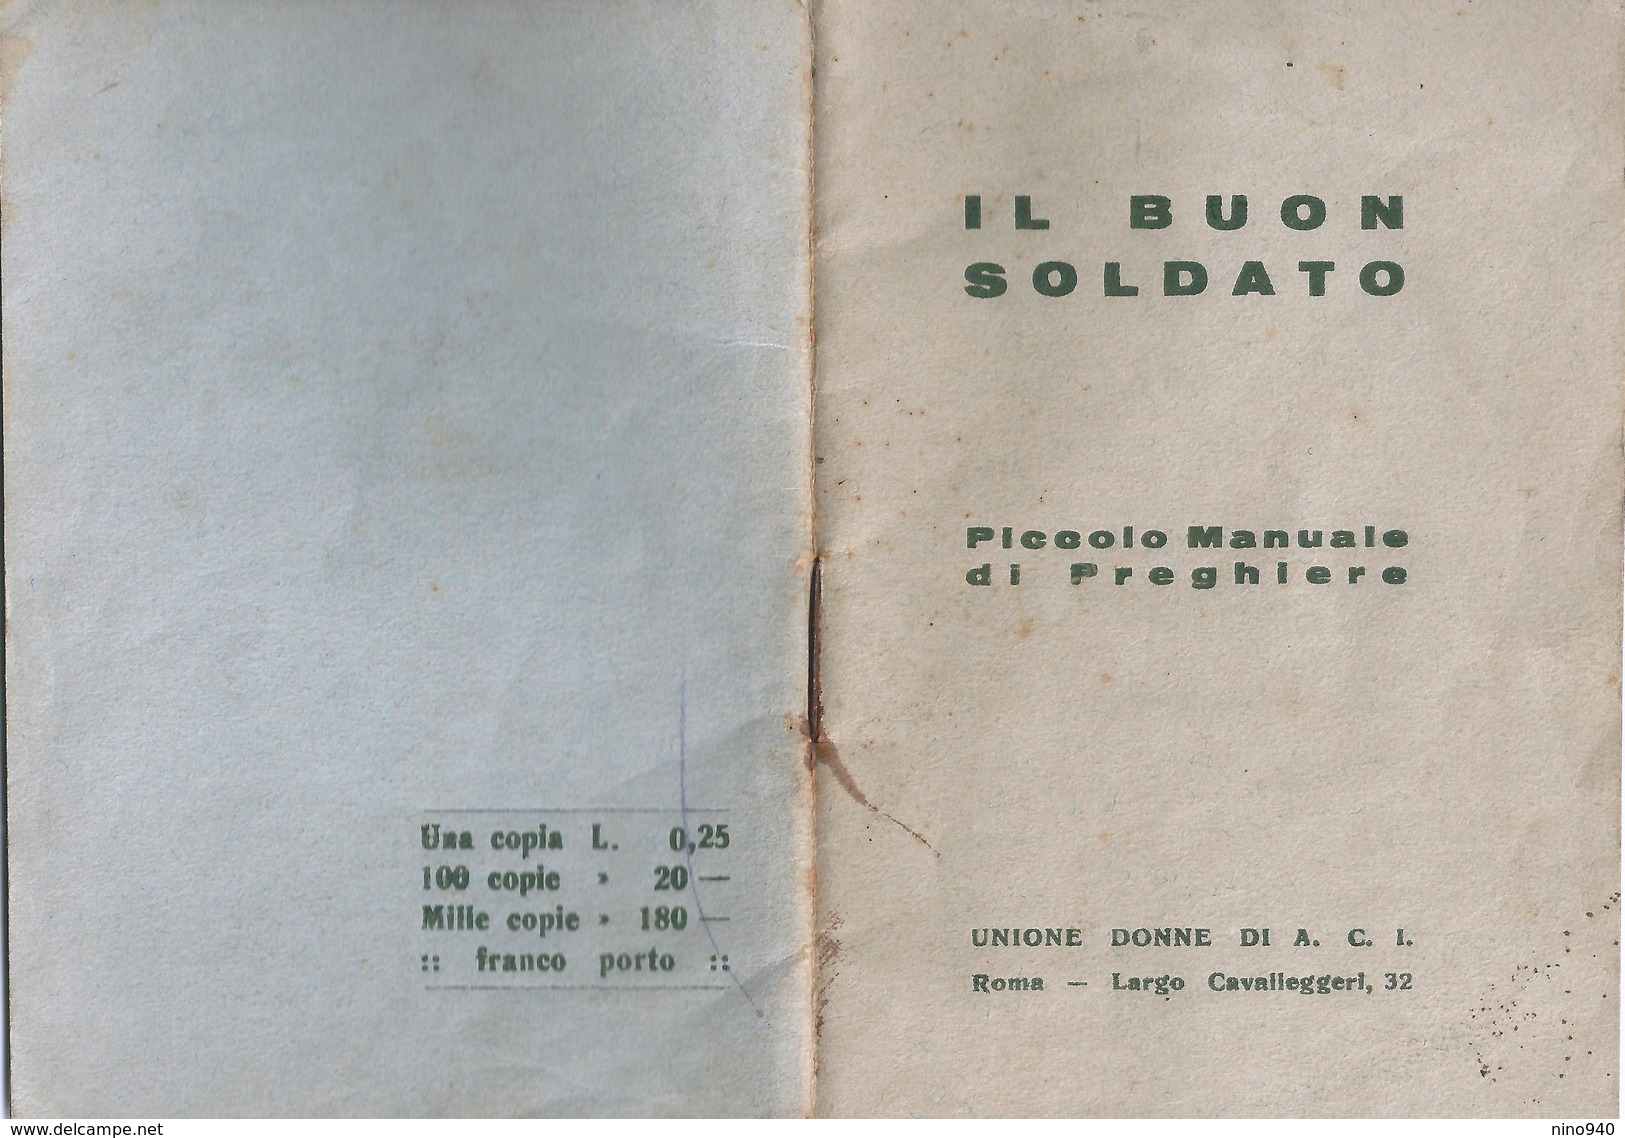 MILITARE - IL BUON SOLDATO  - LIBRETTO DI PREGHIERE - PAGINE 46 - Mm.83 X 119 - UNIONE DONNE DI A.C.I. - ROMA - Religion & Esotericism